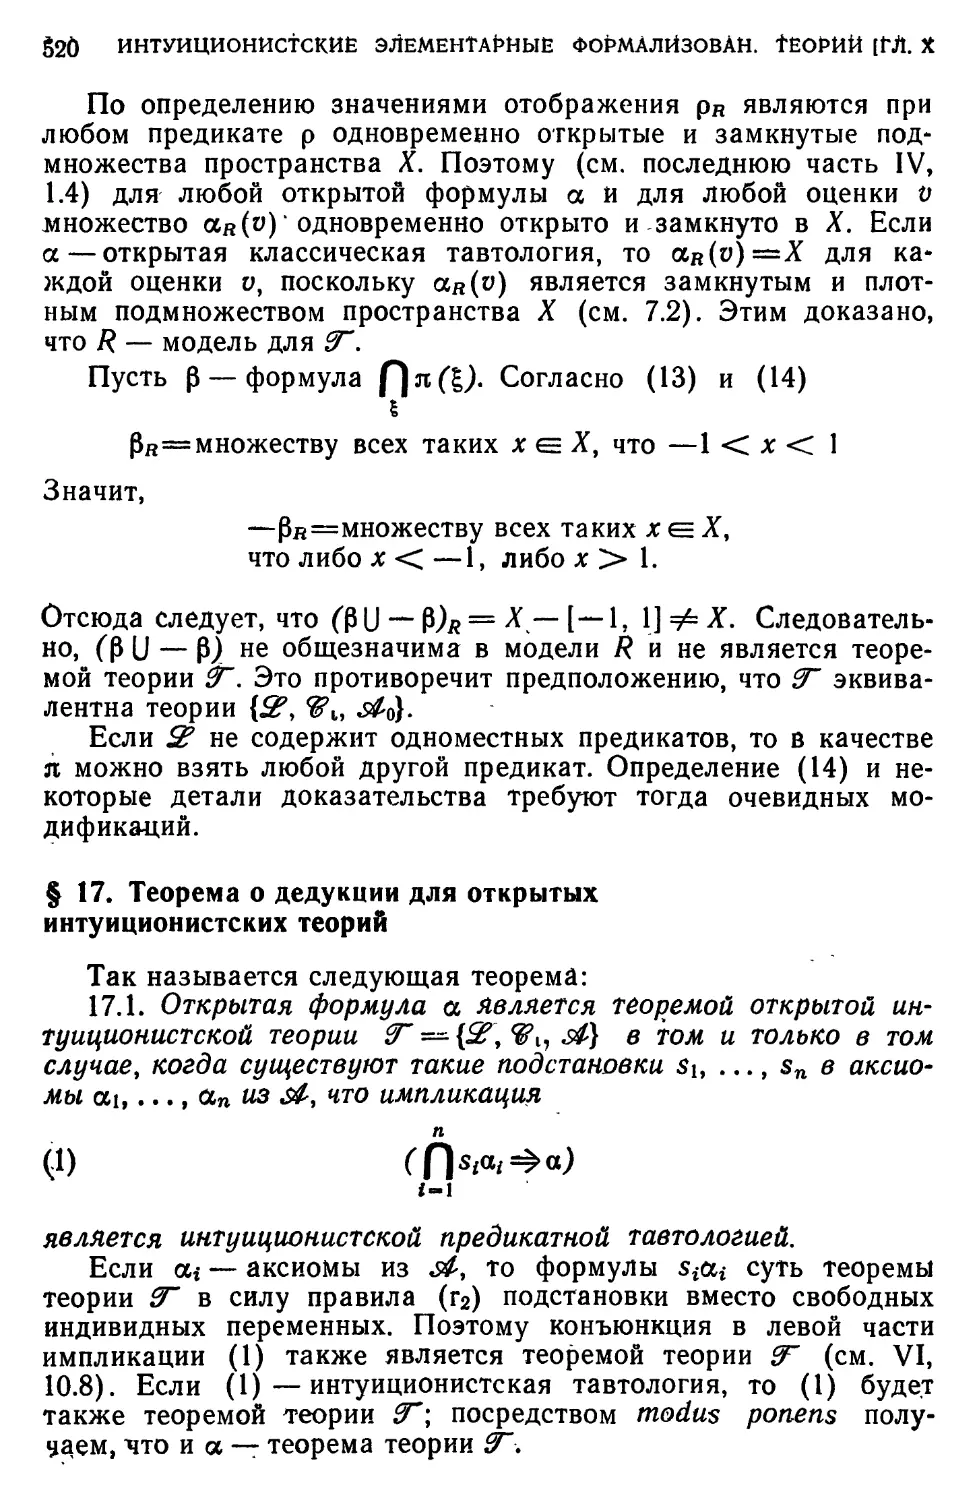 § 17. Теорема 6 дедукции для открытых интуиционистских теорий